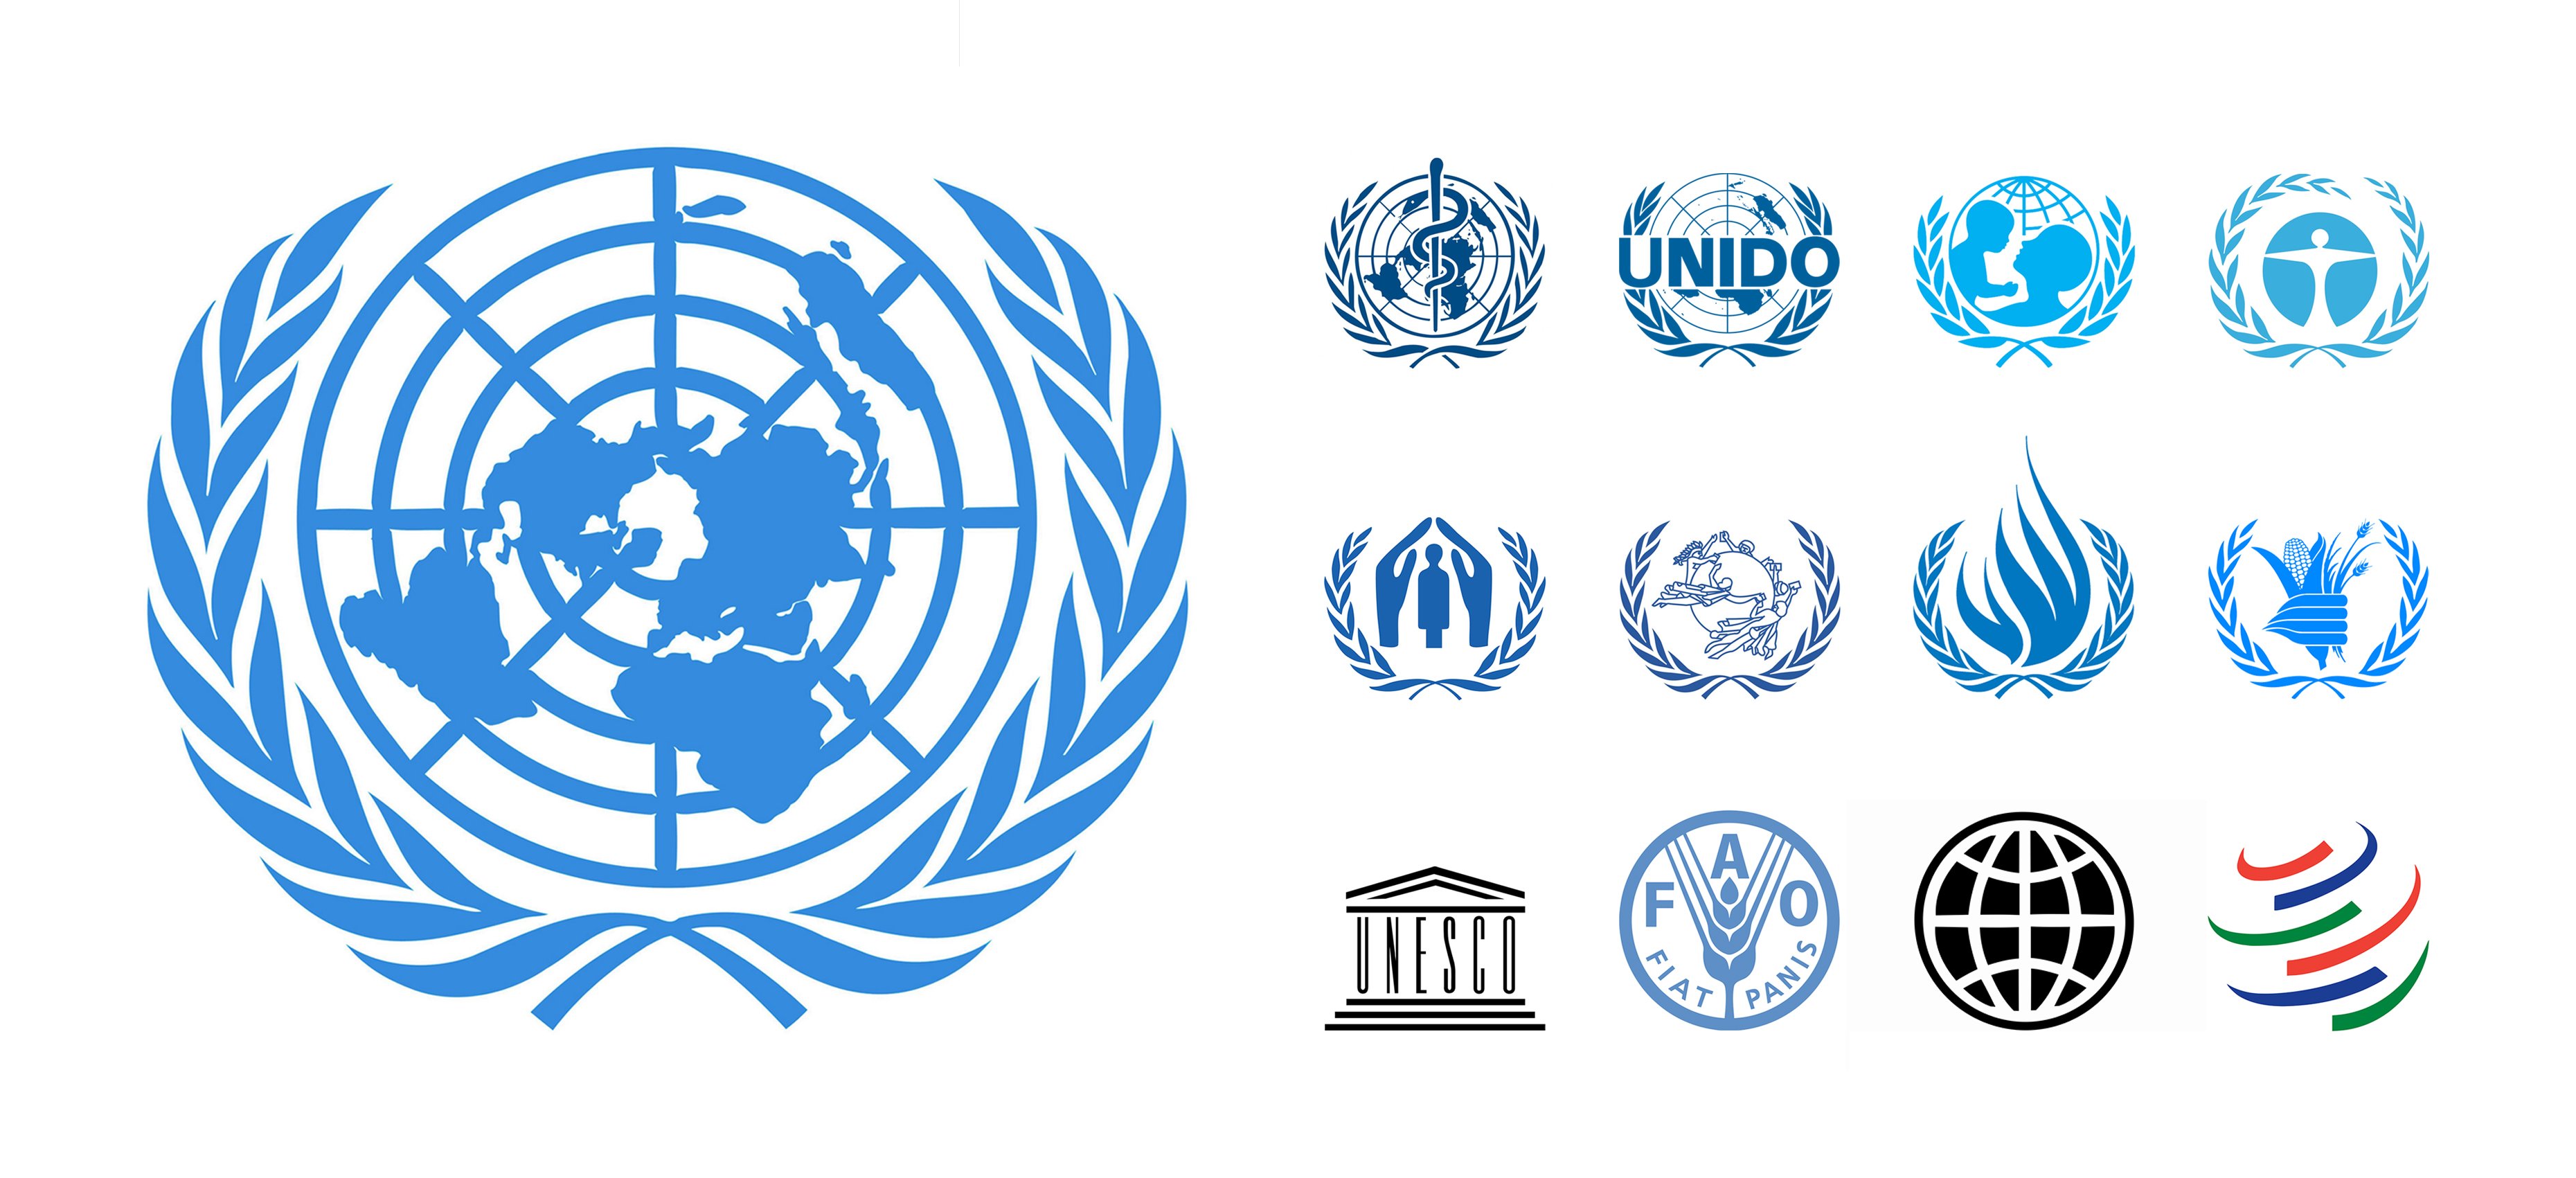 Международная организация основанная. Организация Объединенных наций ЮНЕСКО. Лого организация Объединенных наций (ООН). Символика международных организаций. Международные организациилого.